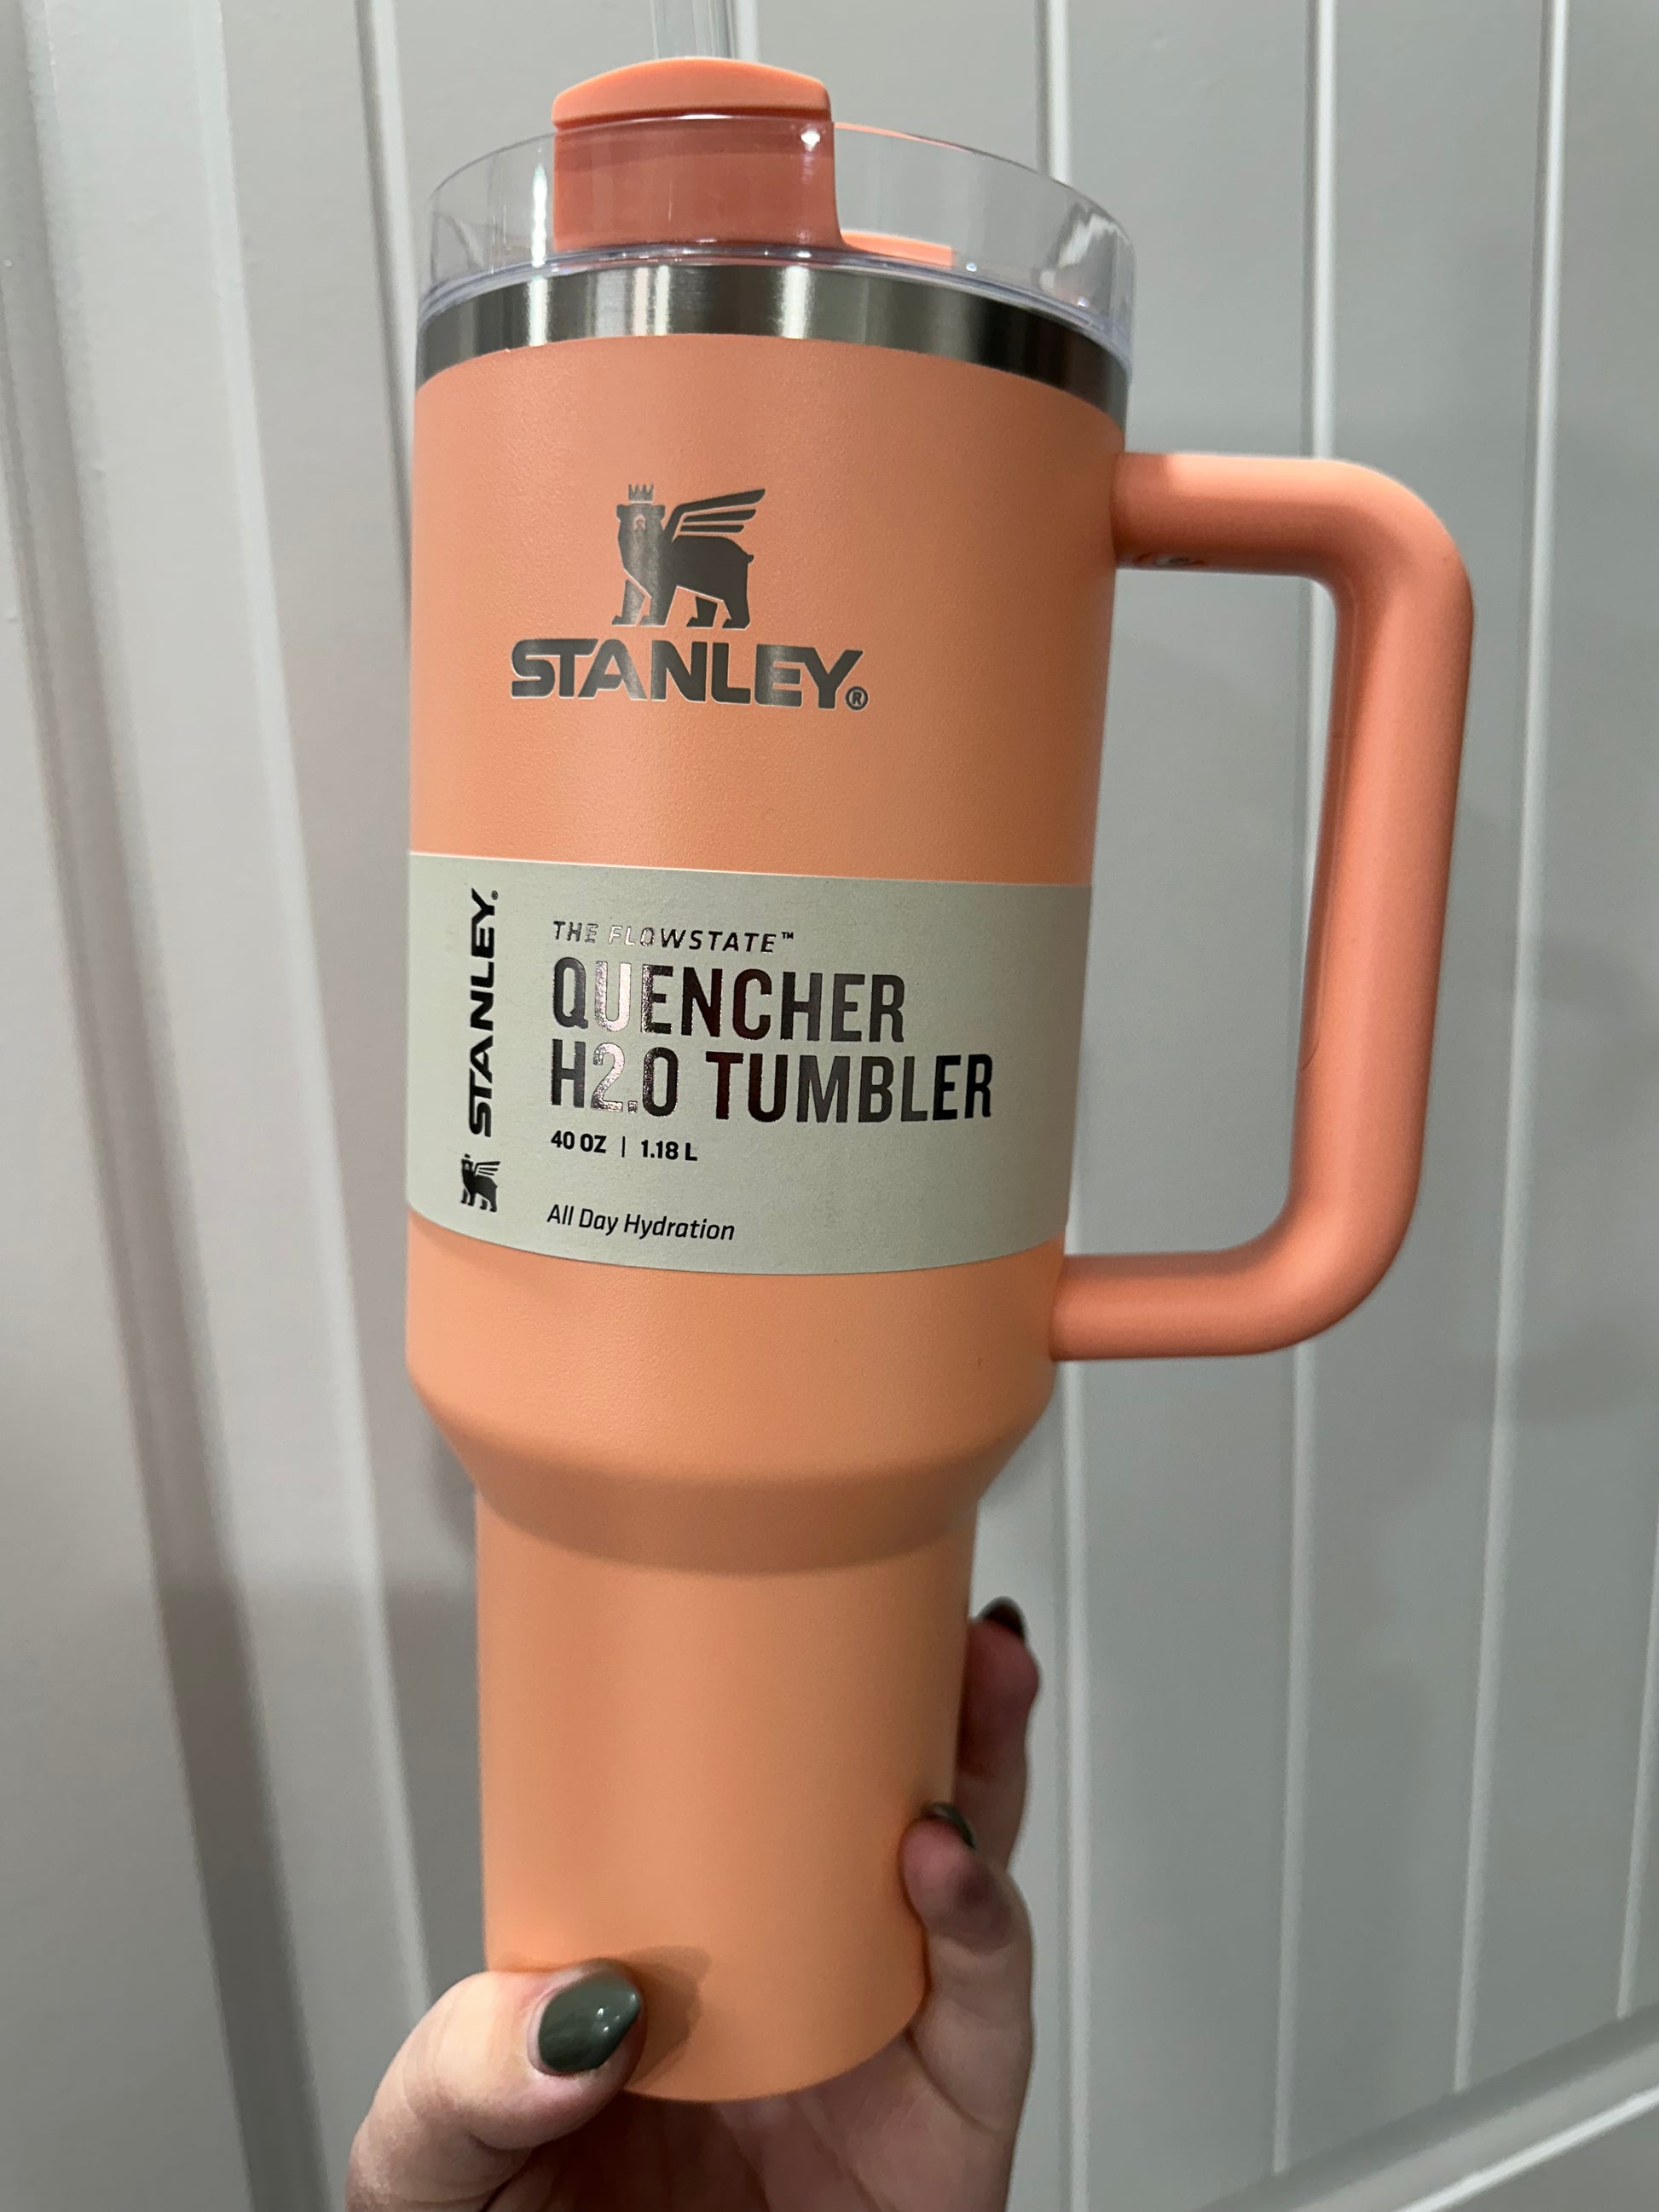 Stanley 40 oz. Quencher H2.0 FlowState Tumbler, Alpine